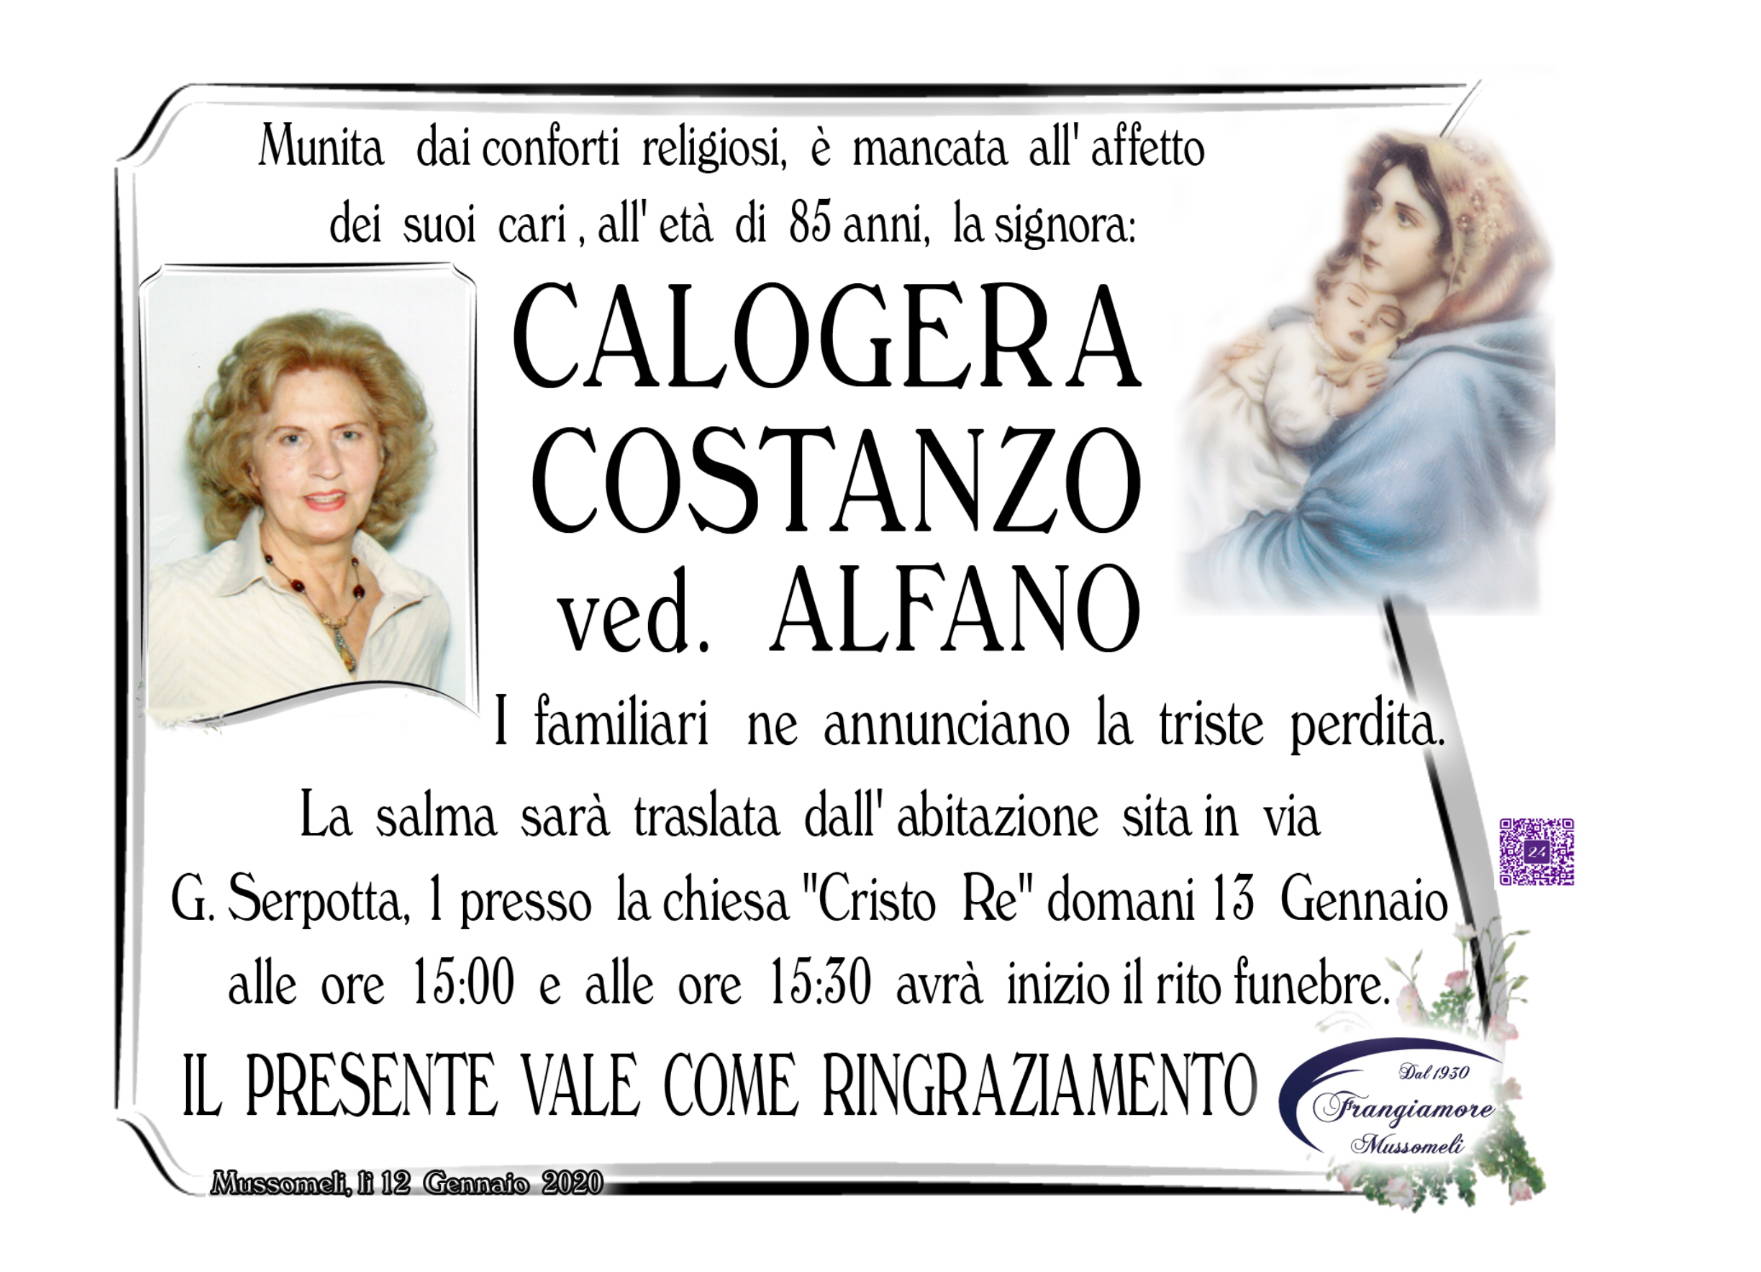 Calogera Costanzo